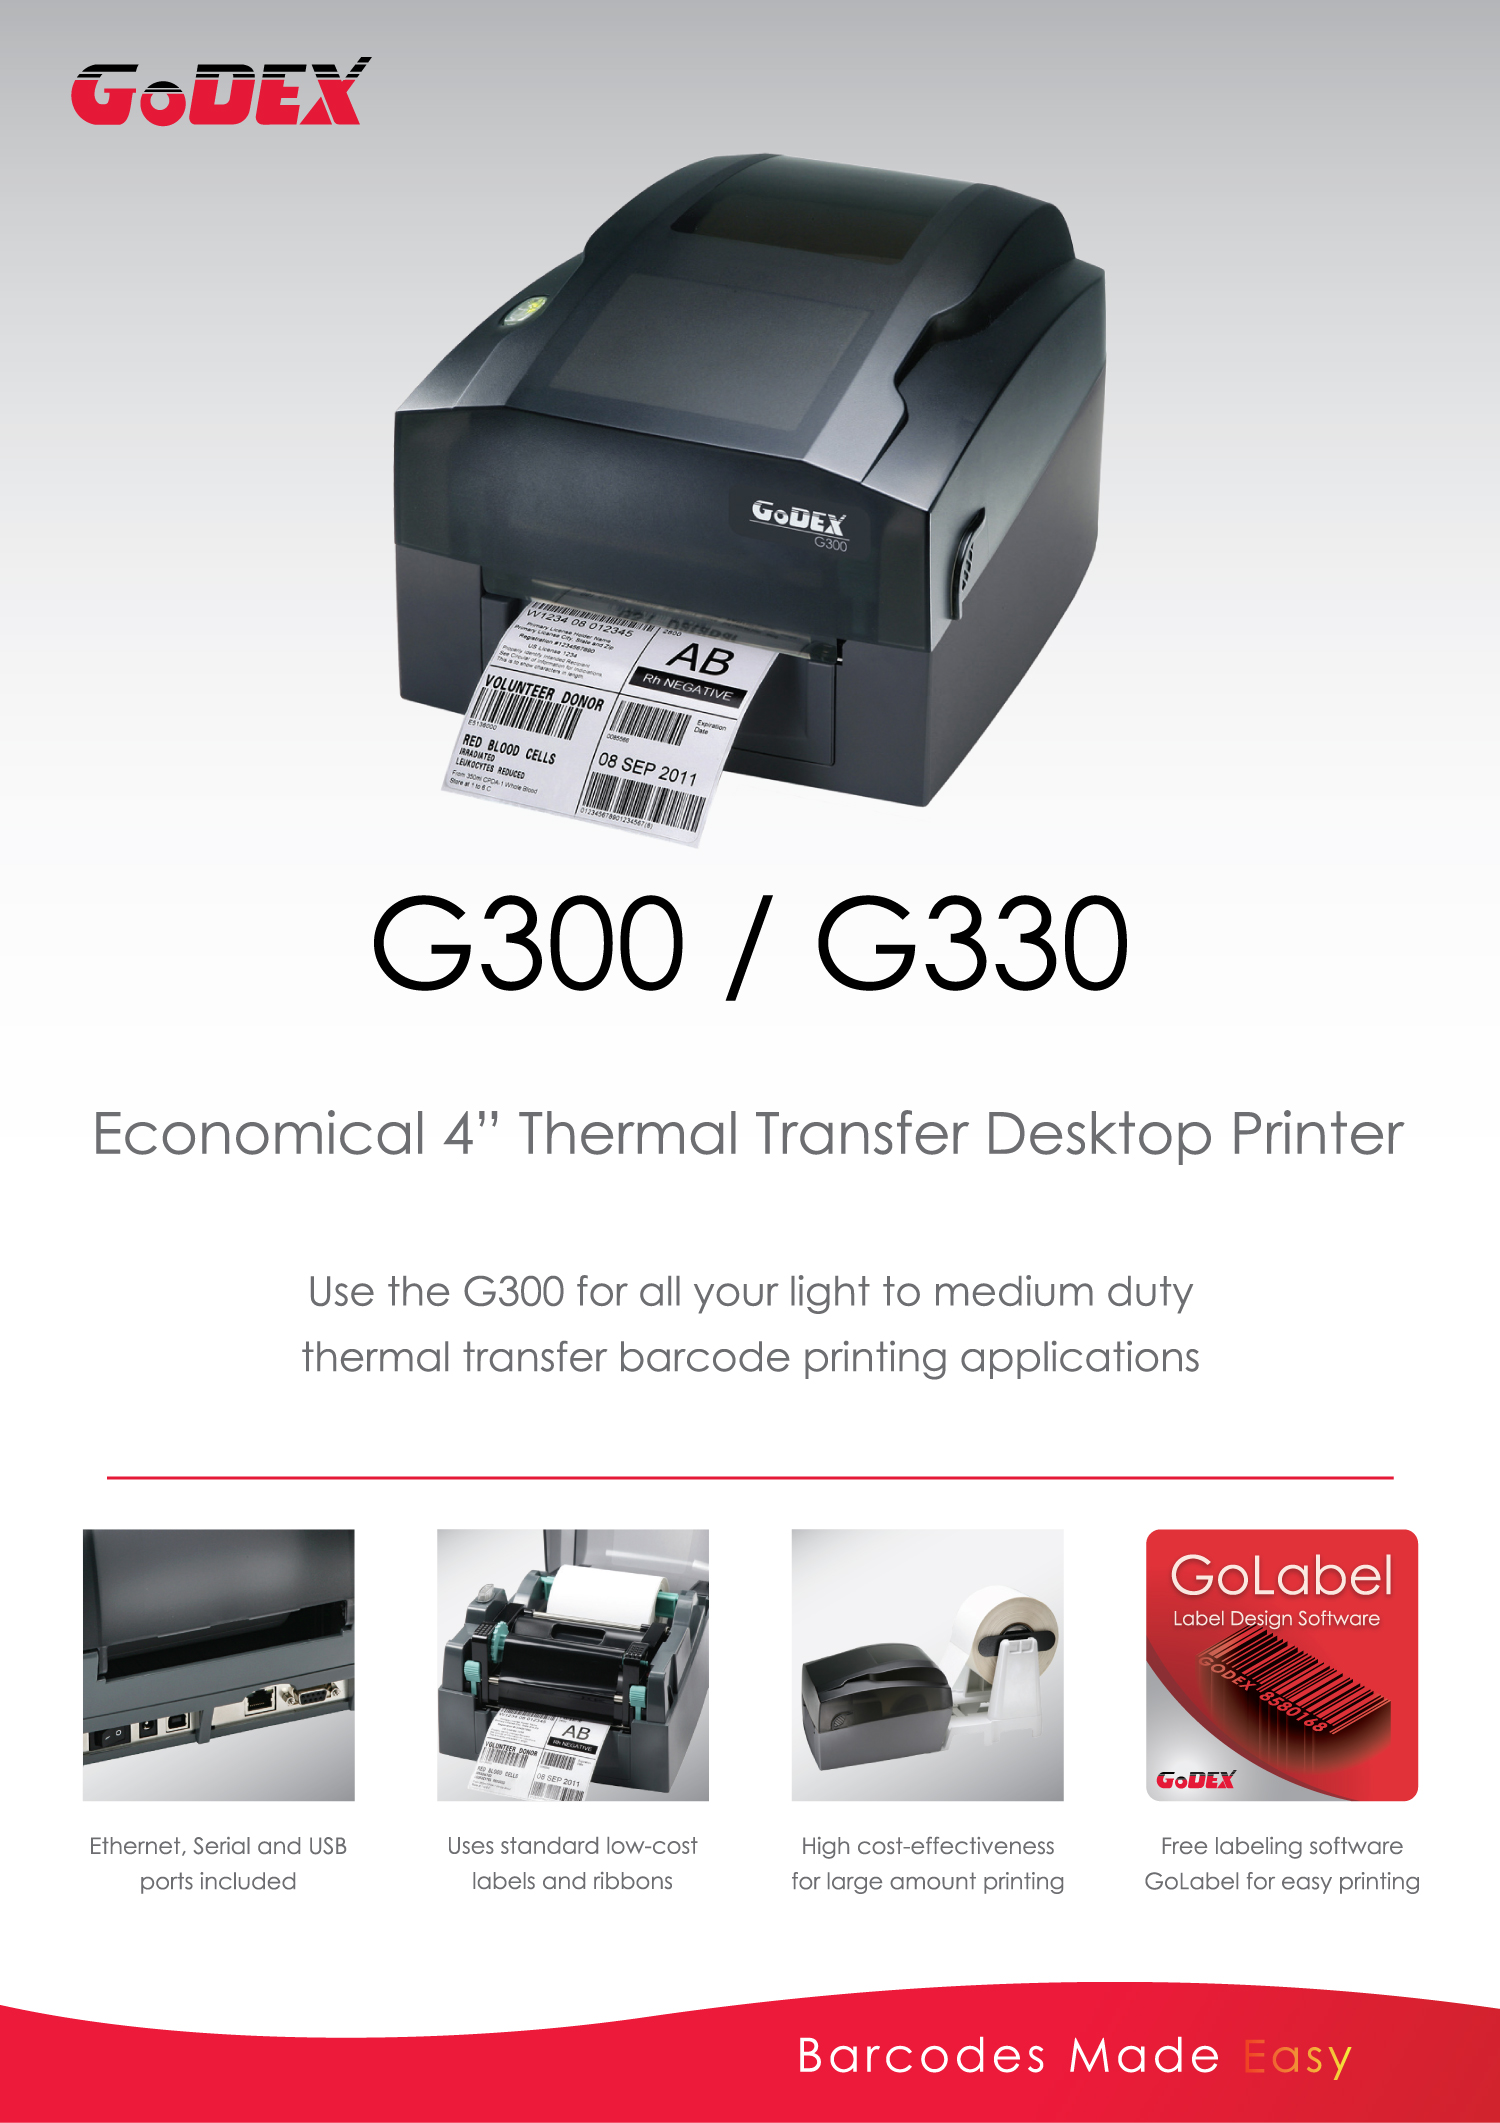 เครื่องพิมพ์บาร์โค้ด Godex G300